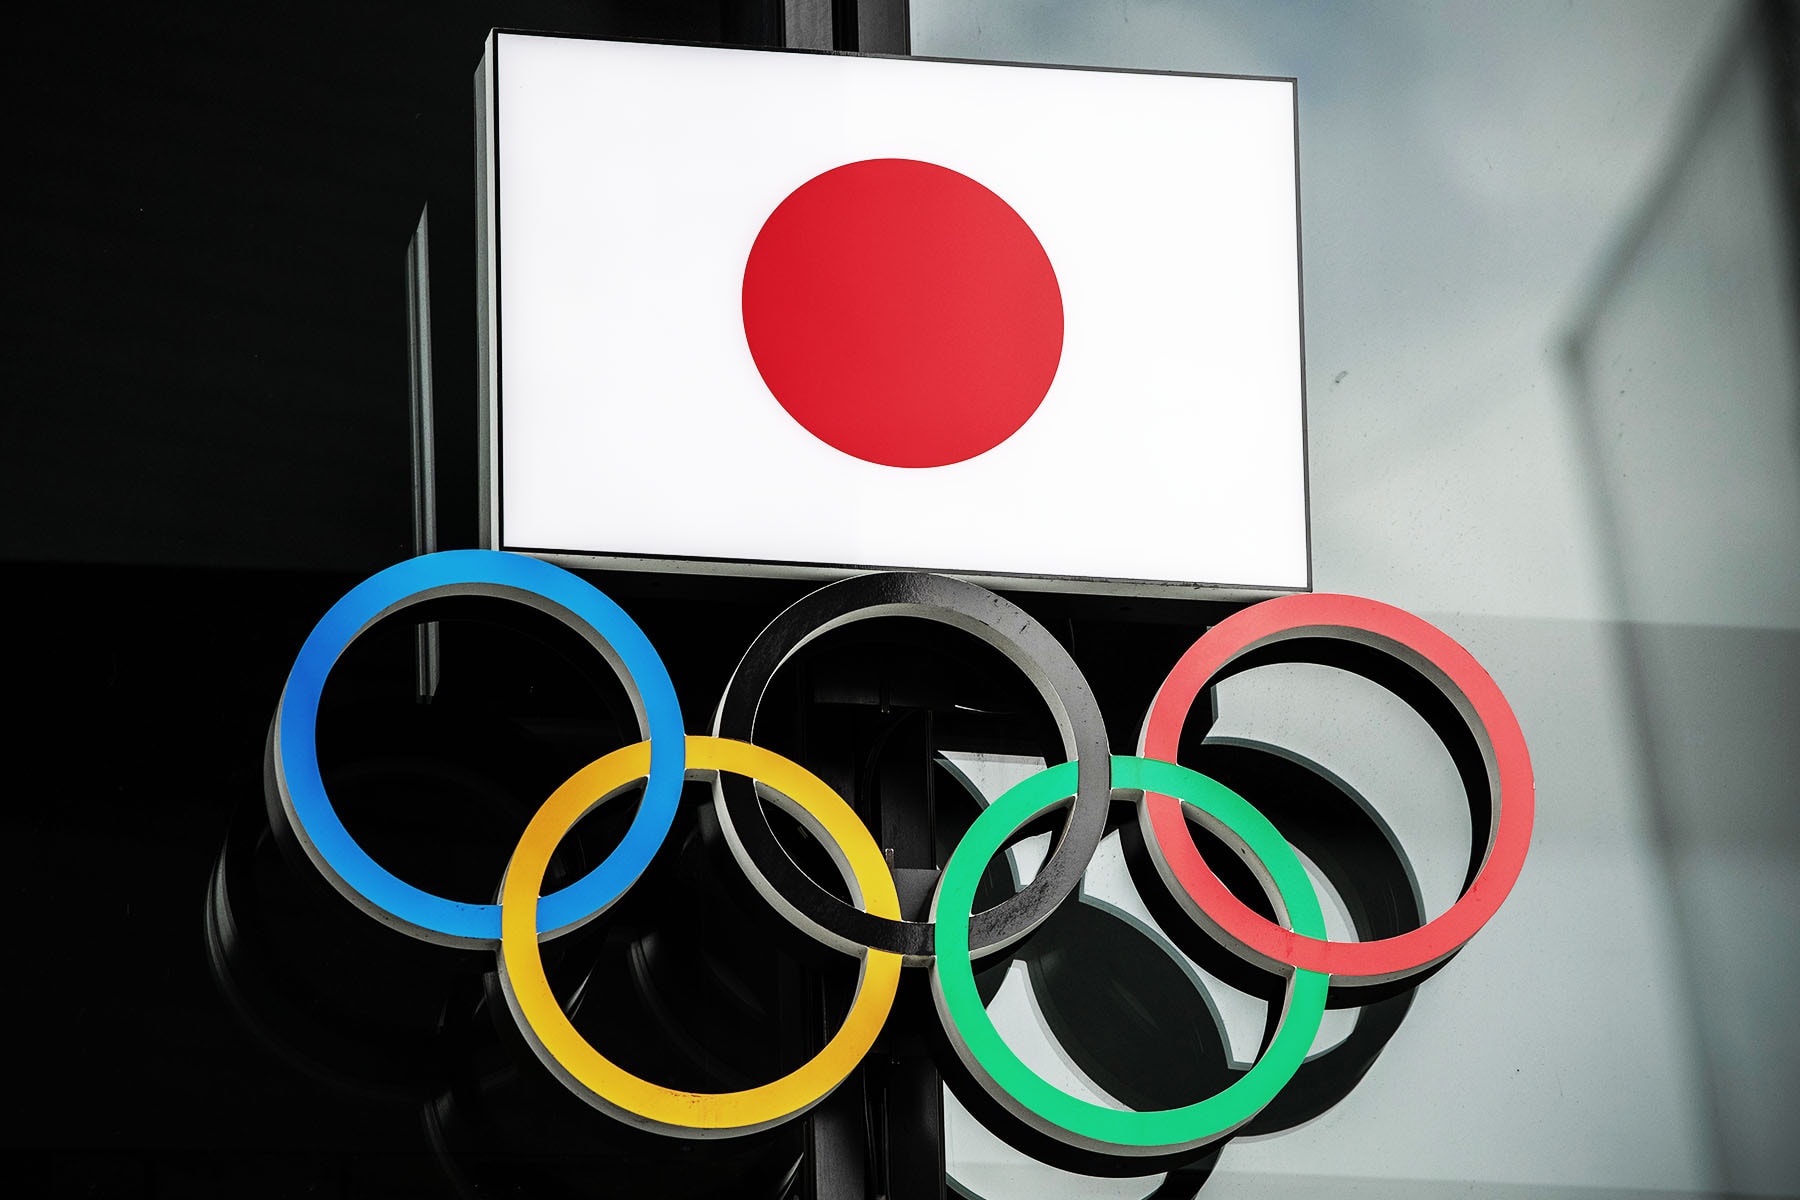 東京奧運將取消選手村所有娛樂與慶祝活動